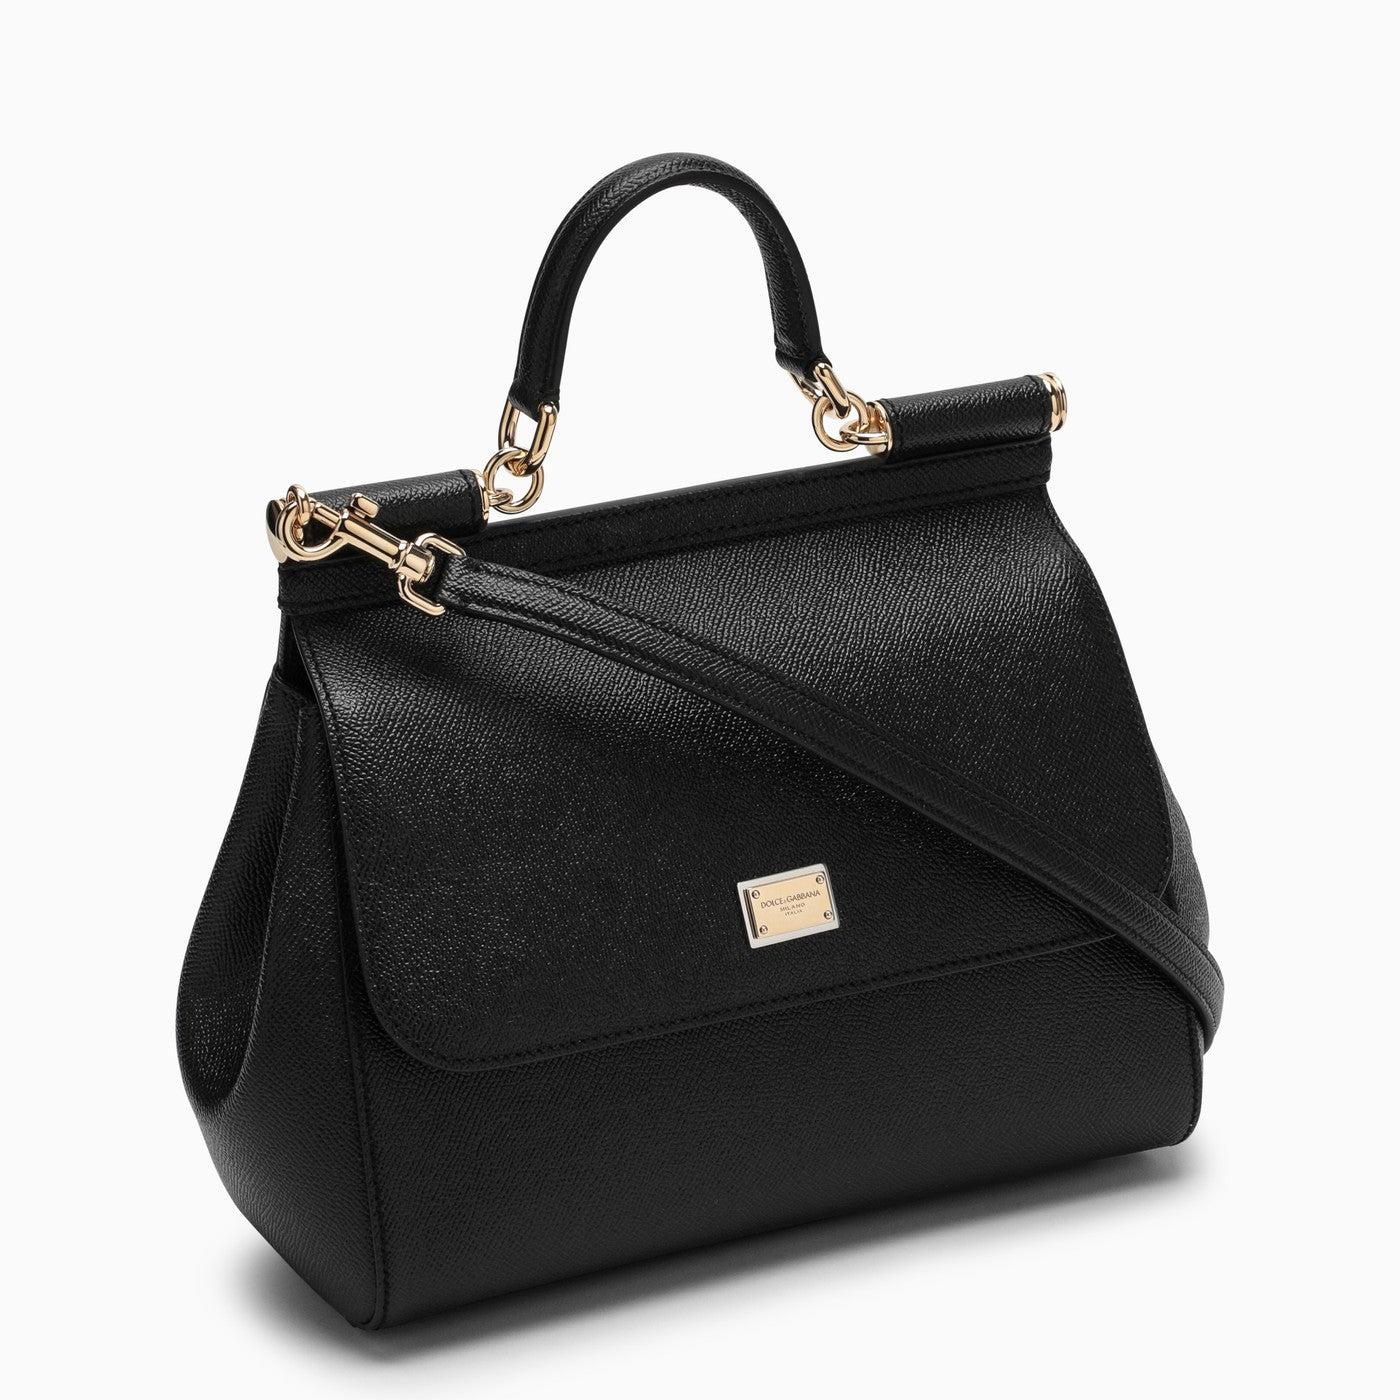 Dolce & Gabbana Medium Sicily Bag in Black